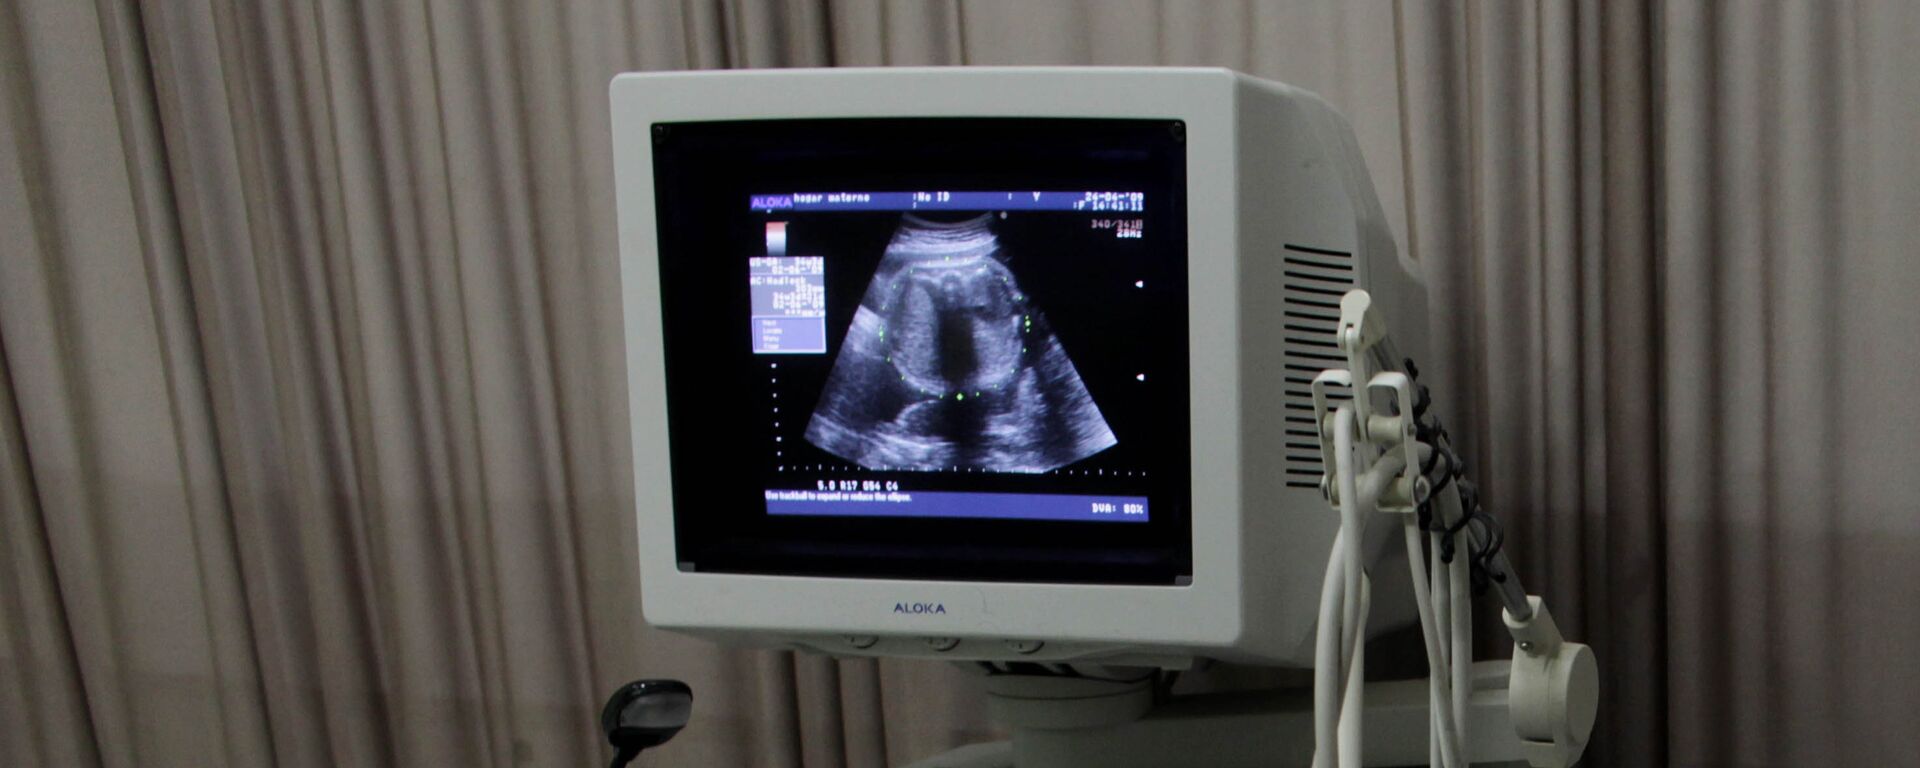 Изображение на экране монитора аппарата УЗИ во время обследования беременной женщины, фото из архива - Sputnik Азербайджан, 1920, 05.09.2021